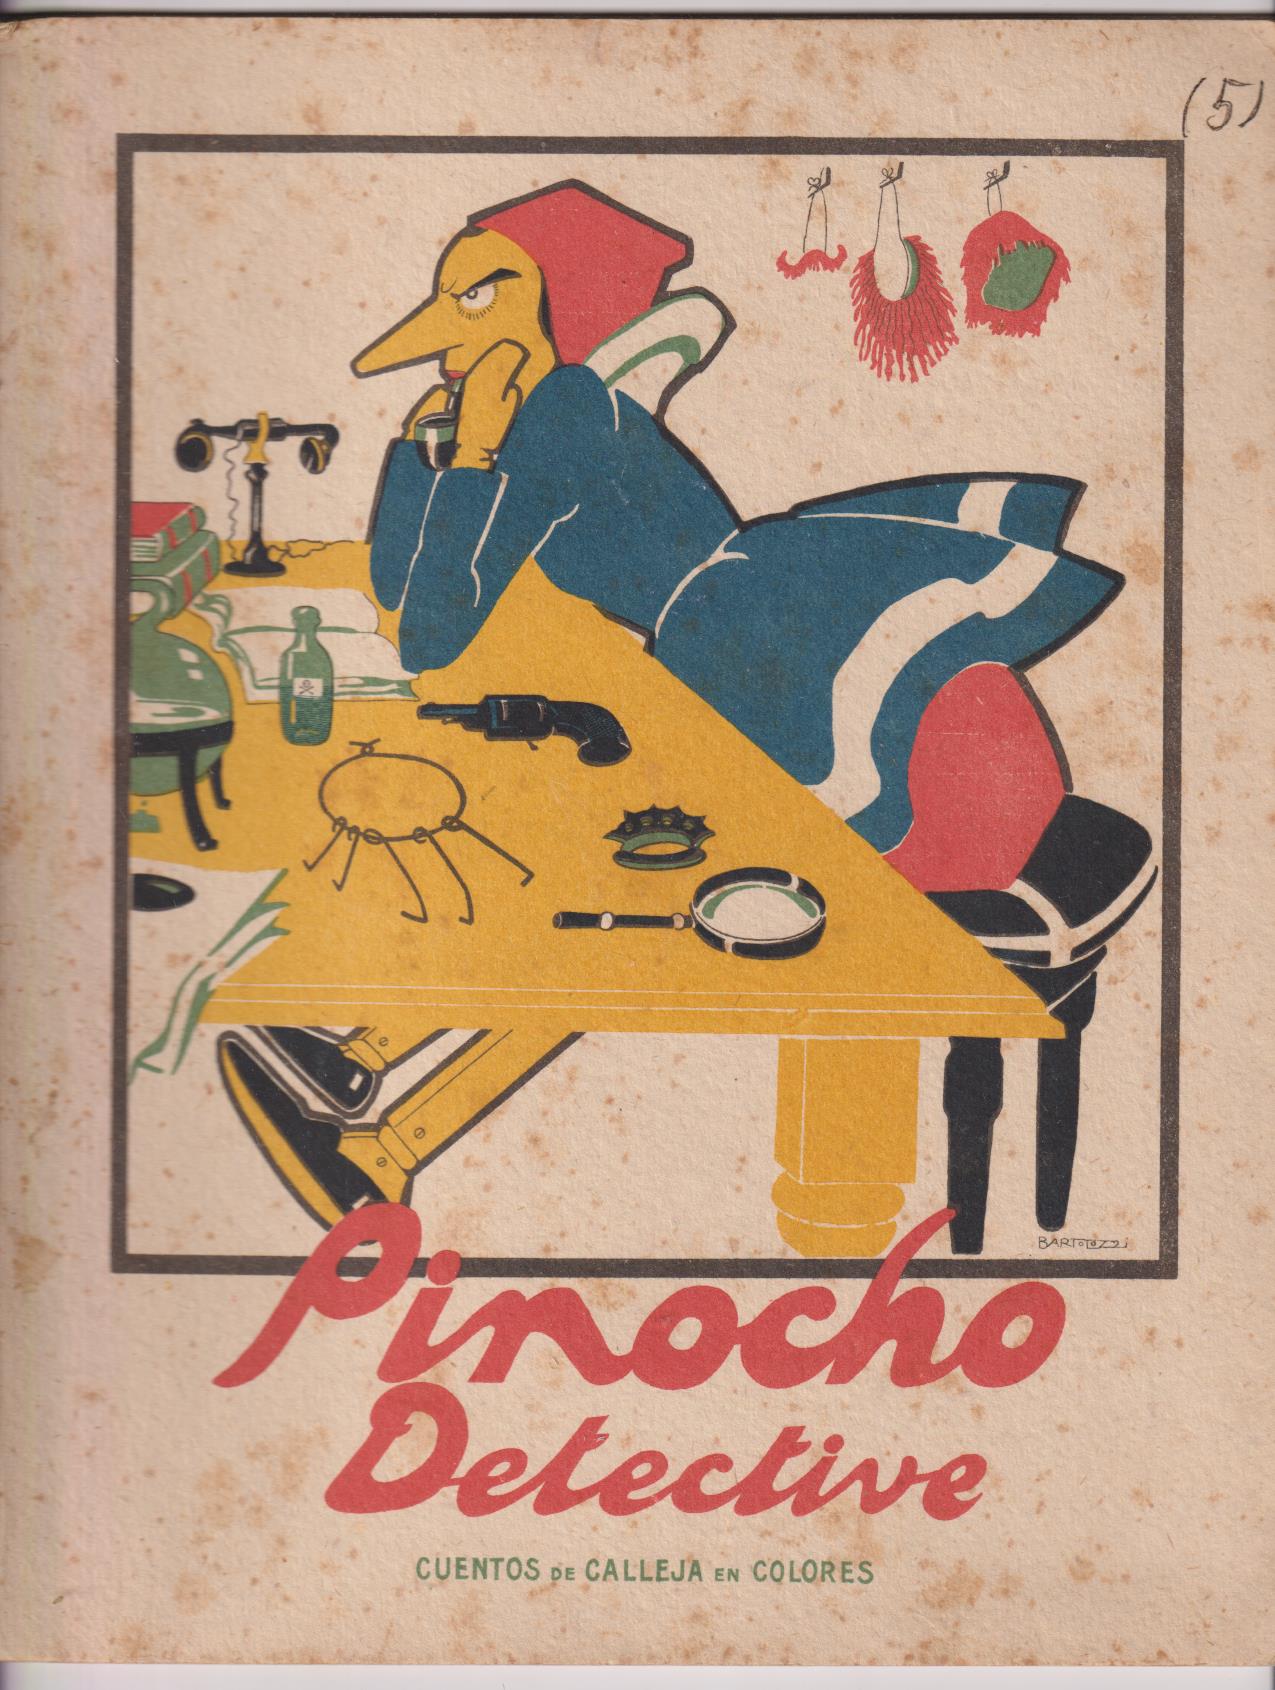 Pinocho nº 5. Pinocho Detective. 1ª Edición Calleja 1919. (28x22) 16 páginas. MUY DIFÍCIL